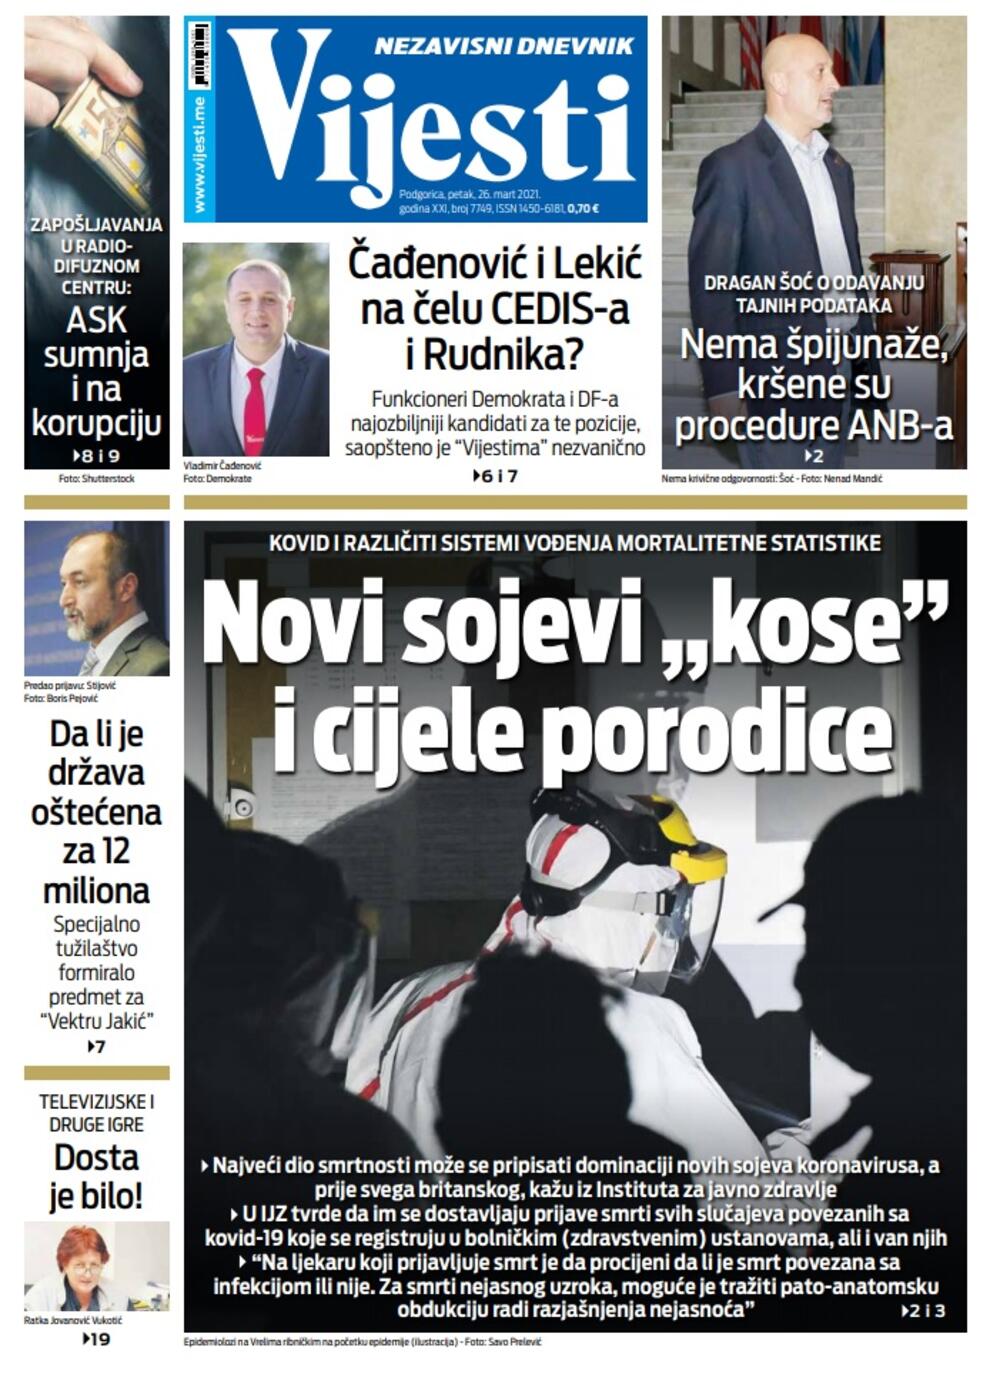 Naslovna strana "Vijesti" za petak 26. mart 2021. godine, Foto: Vijesti